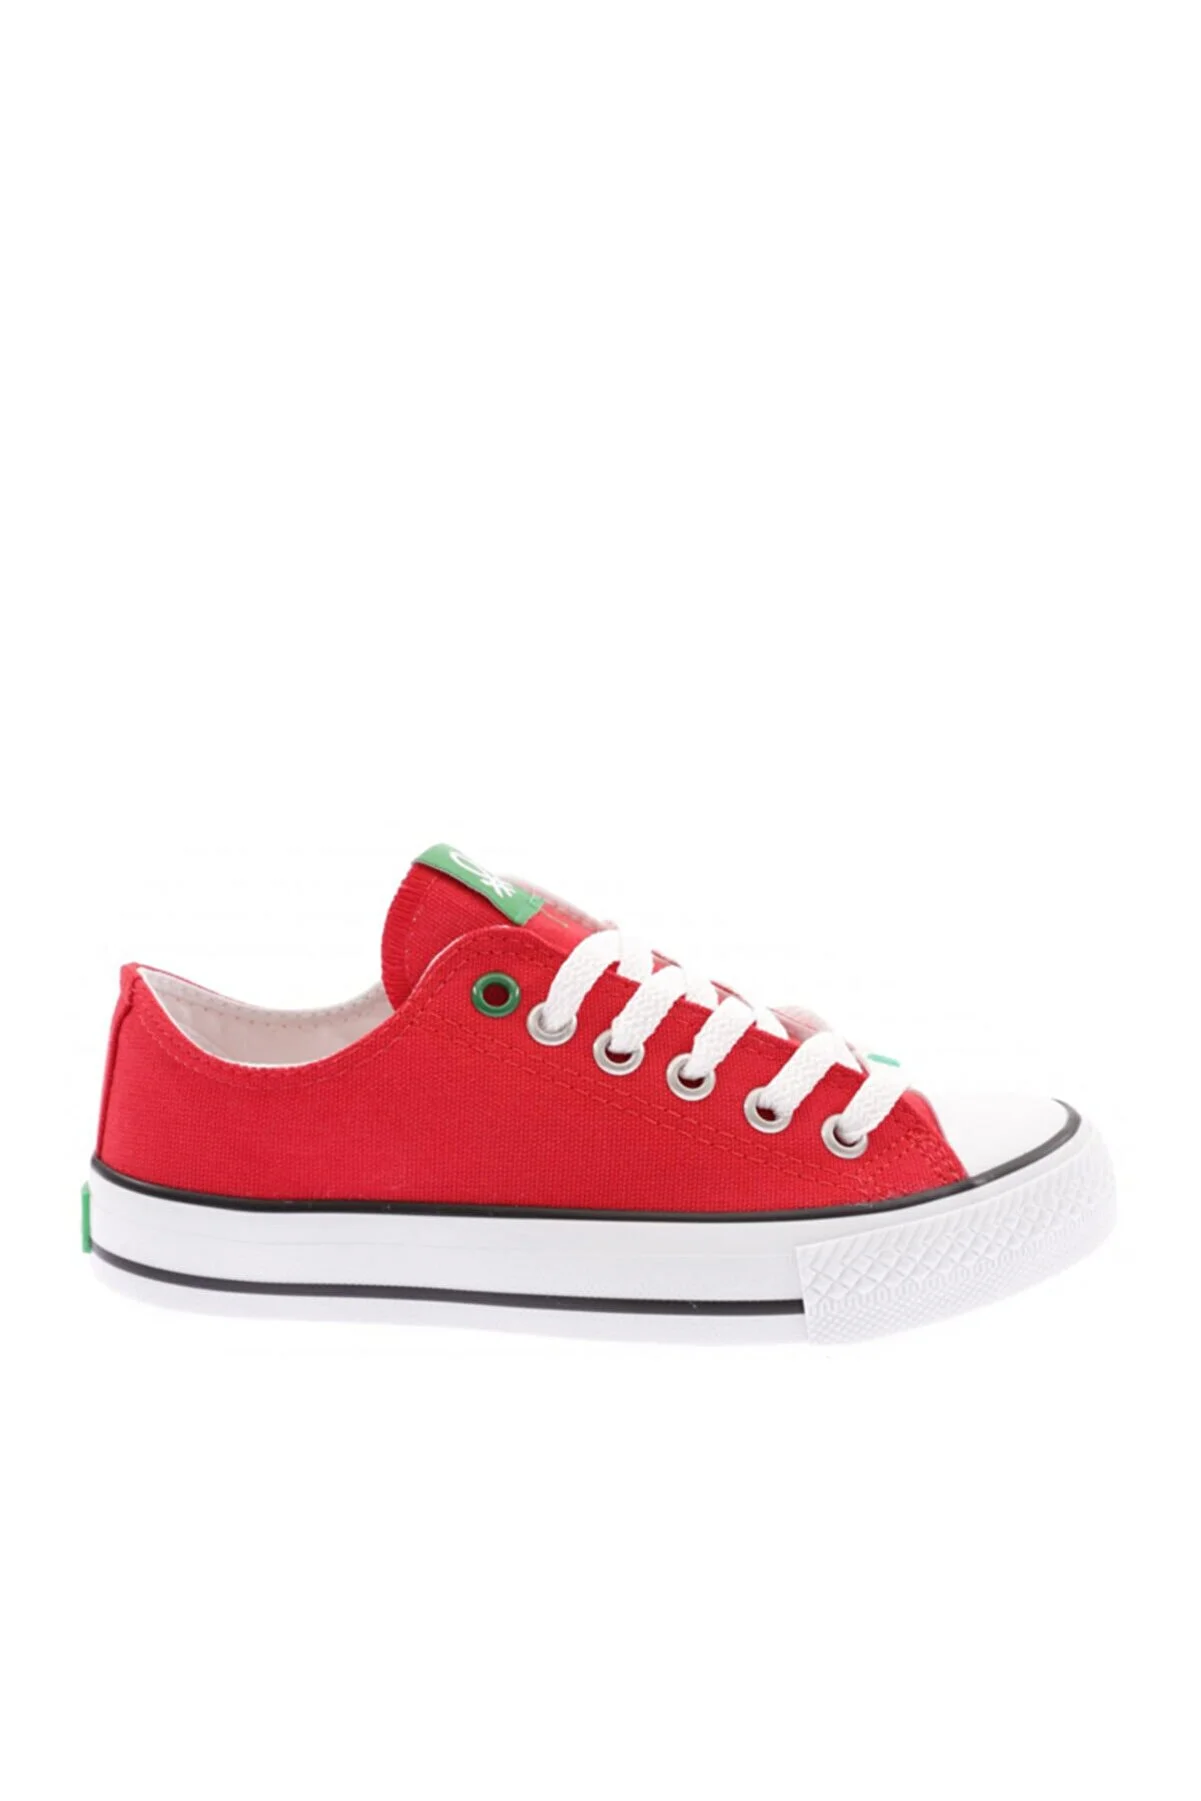 Kadın Spor ayakkabı-BN-30196-Kırmızı